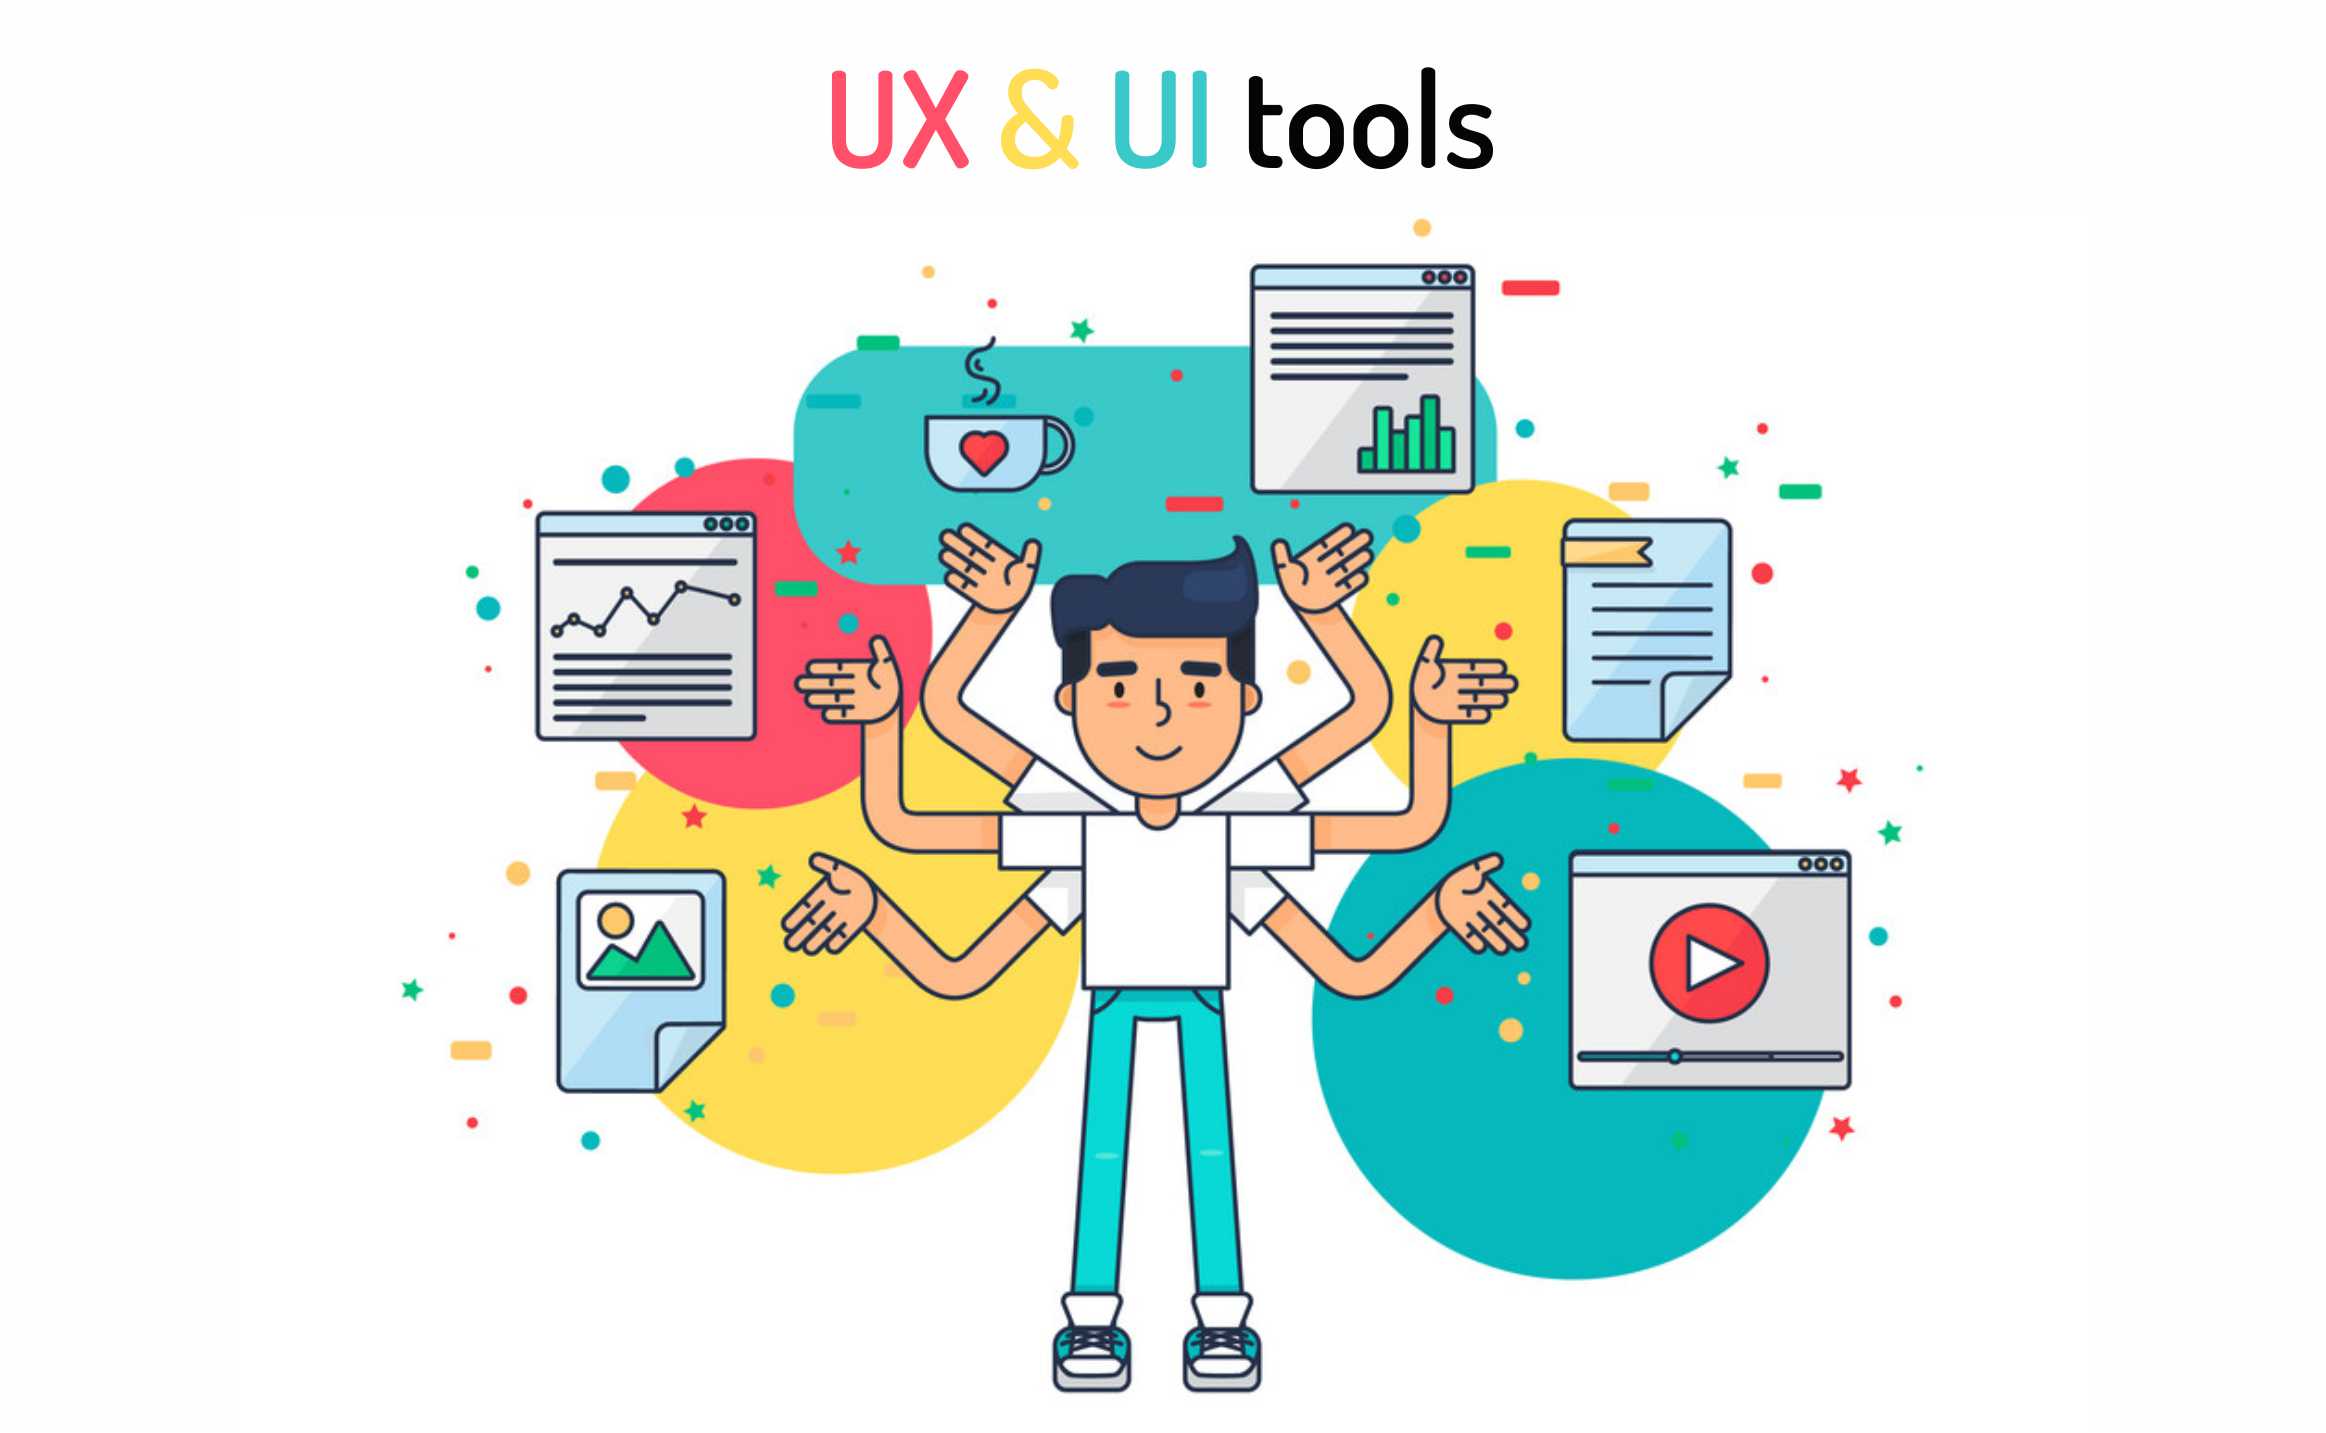 UX & UI tools